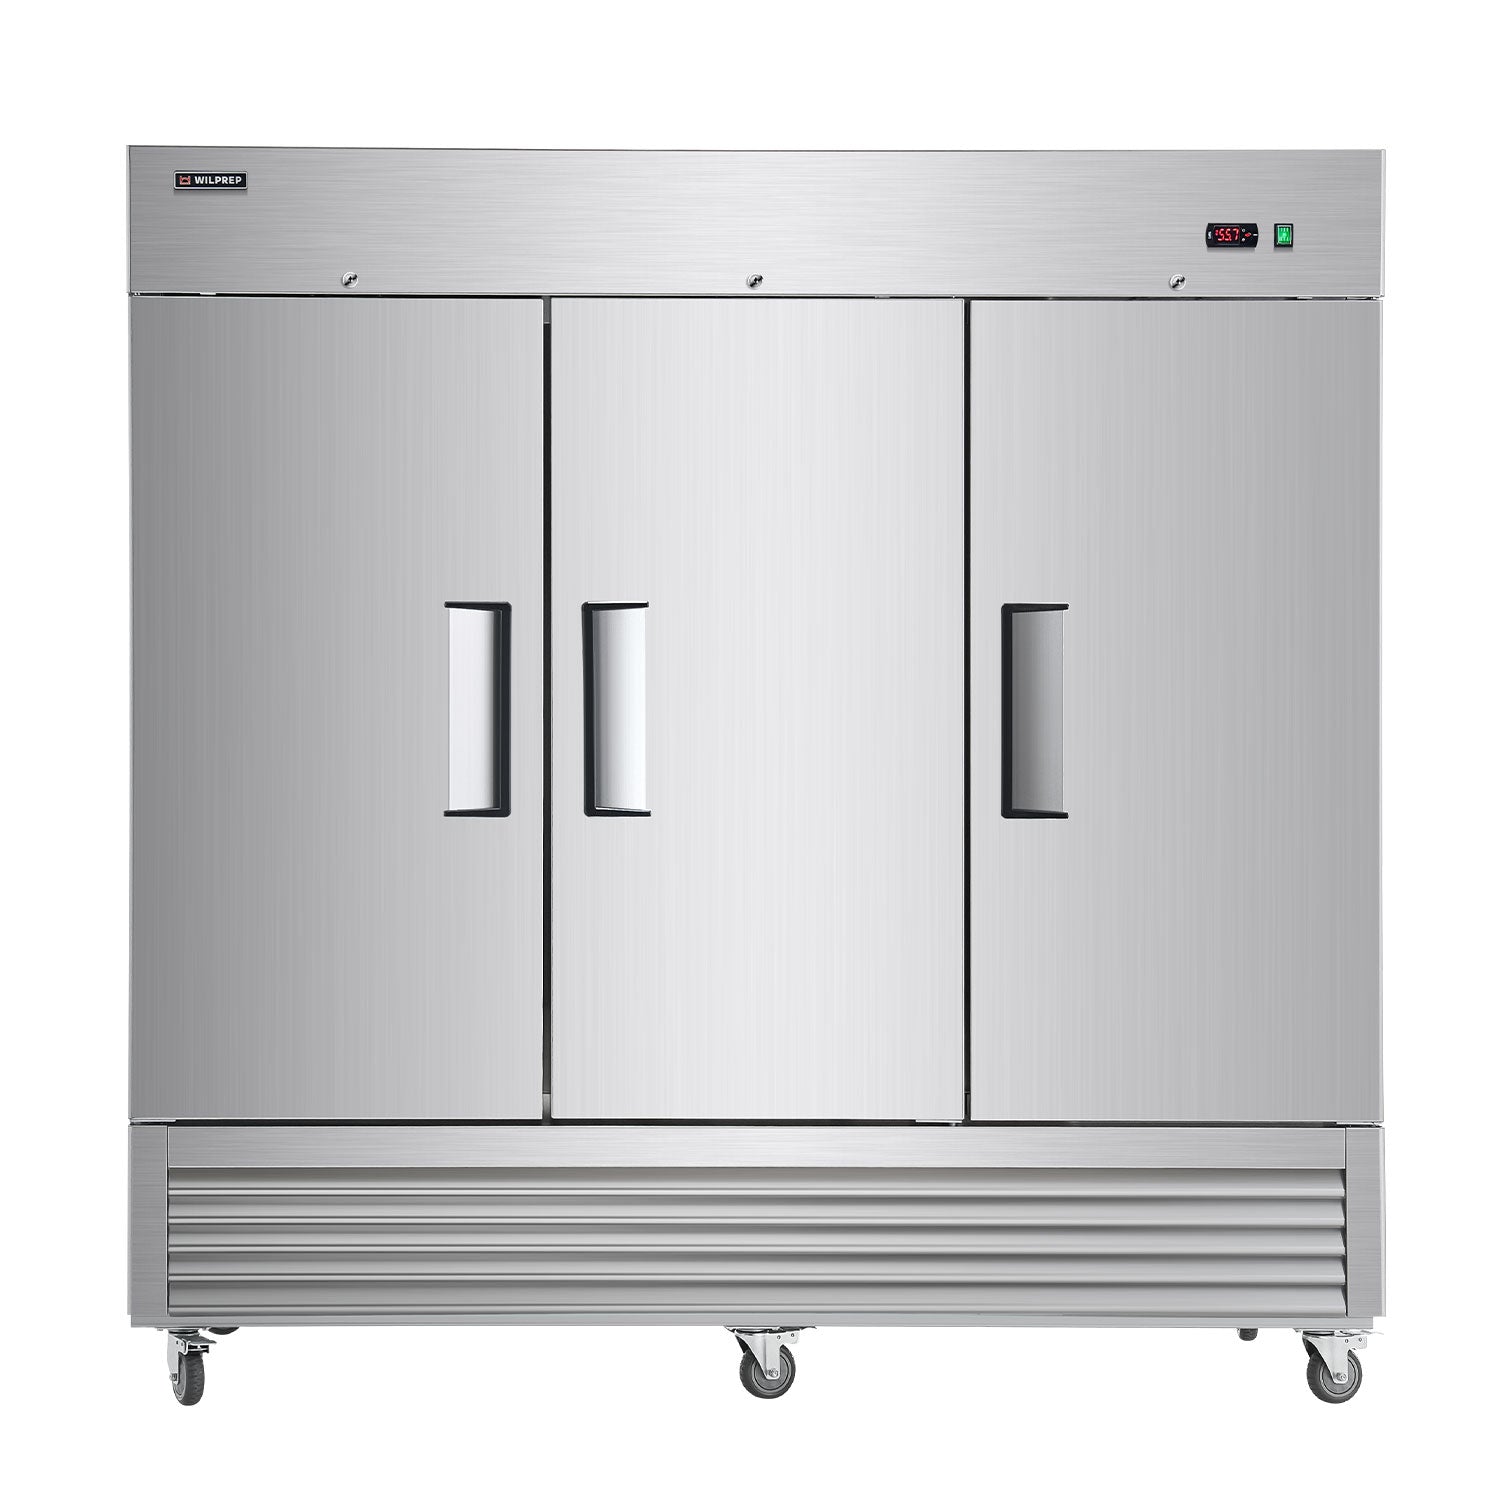 81" Triple Door Commercial Freezer  60.9 cu. ft Capacity